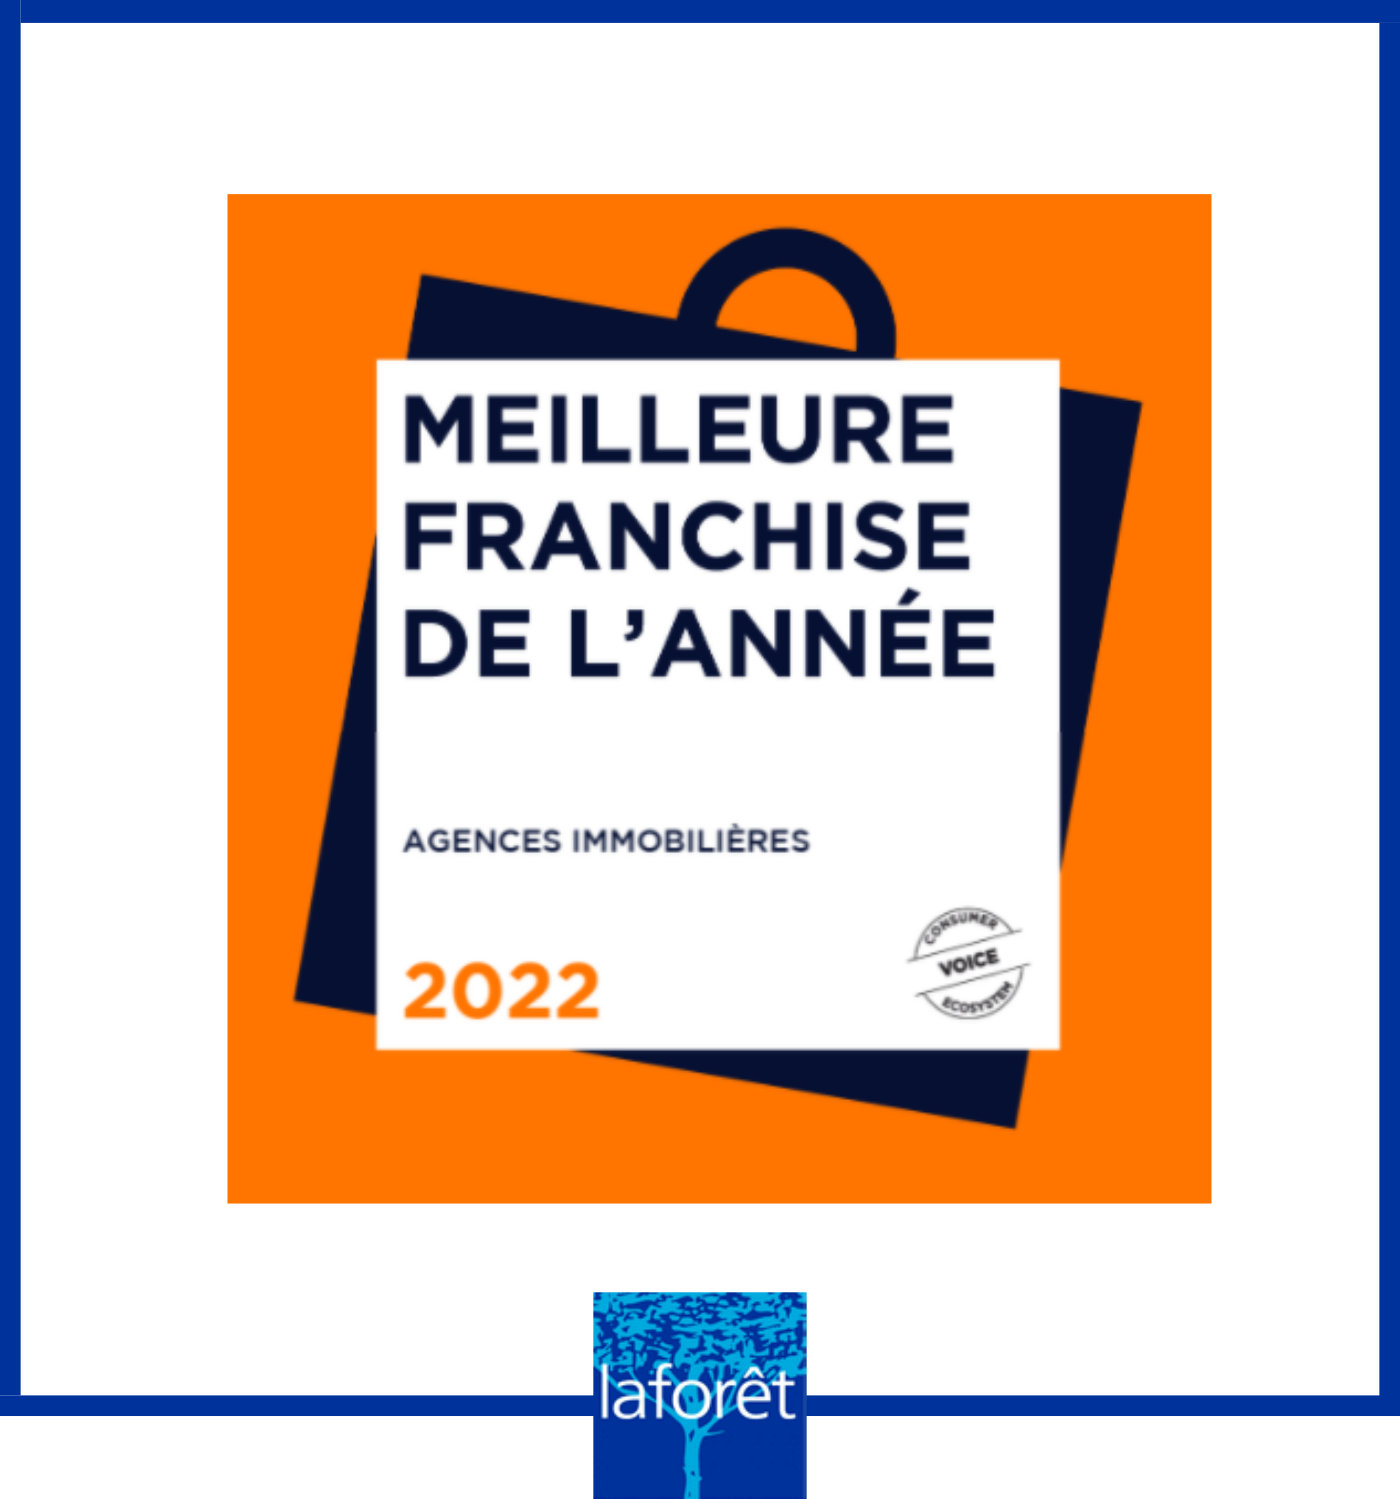 Laforêt Guilvinec- immobilier pays bigouden- franchise 2022